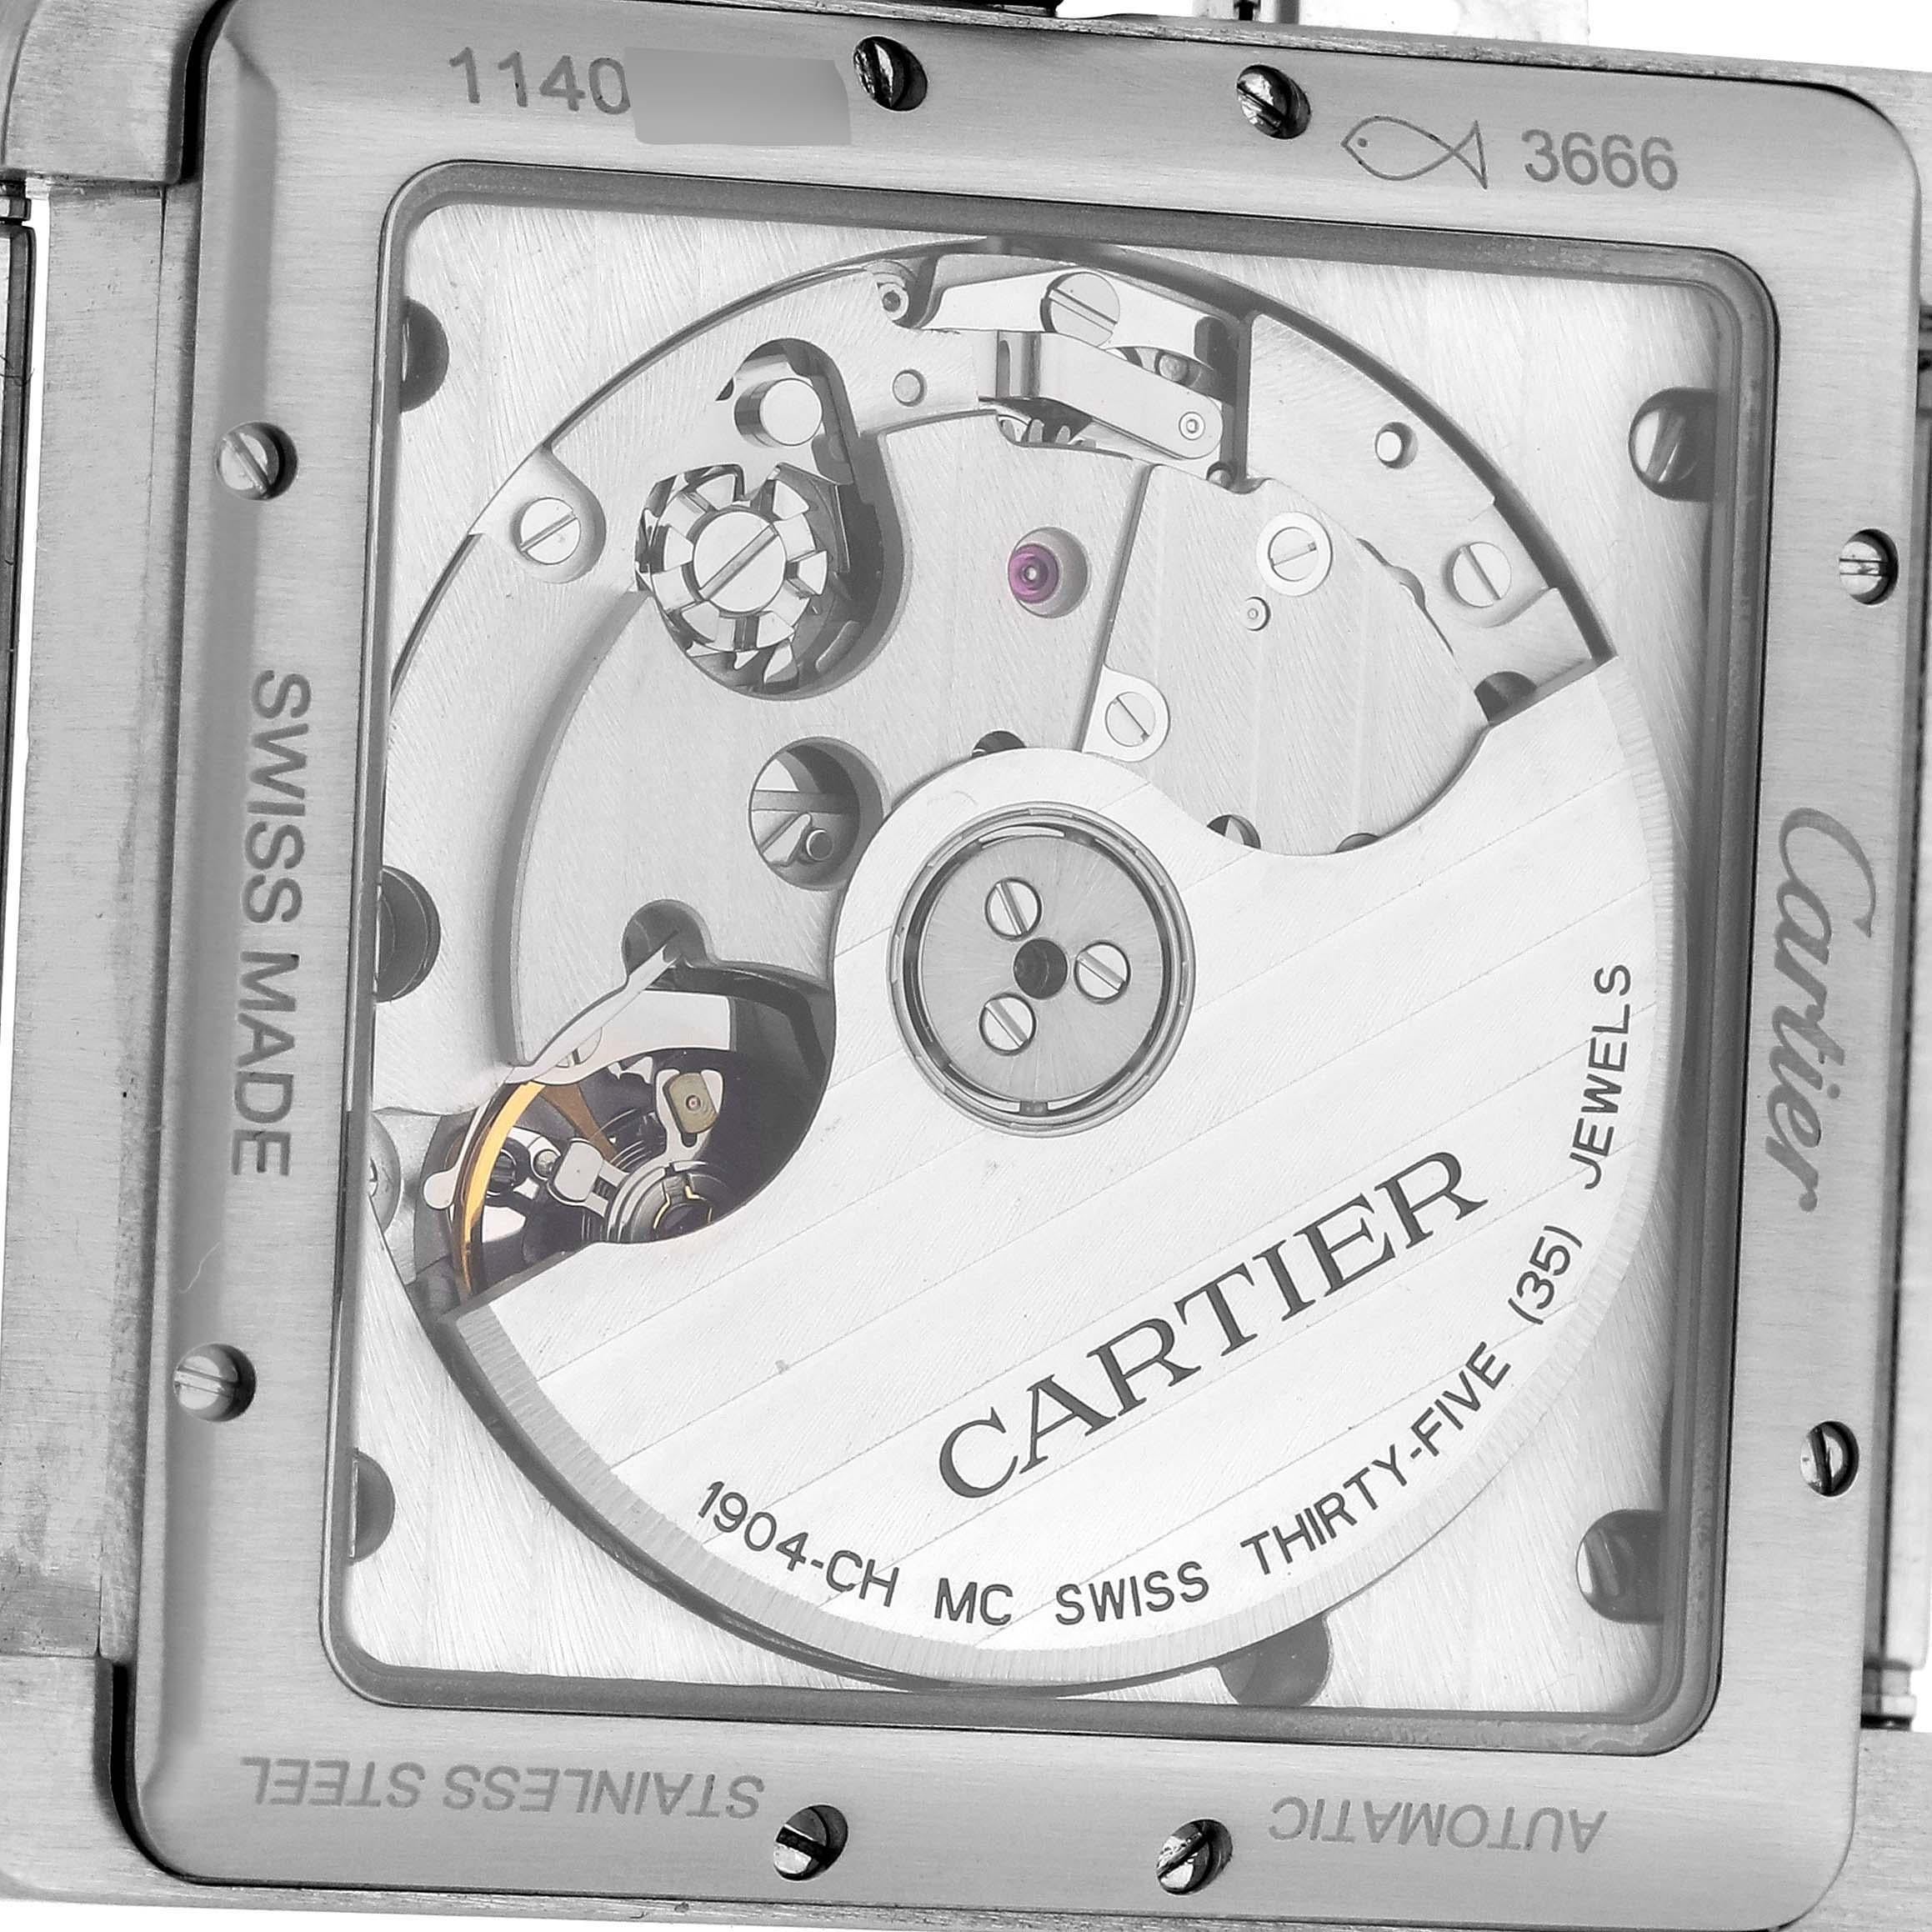 Cartier Tank MC Silber Zifferblatt Automatik Chronograph Herrenuhr W5330007 Papiere. Automatisches Chronographenwerk mit Selbstaufzug. Drei Gehäuse aus gebürstetem Edelstahl 34,3 x 44,0 mm. Geschützte achteckige Krone, besetzt mit facettiertem